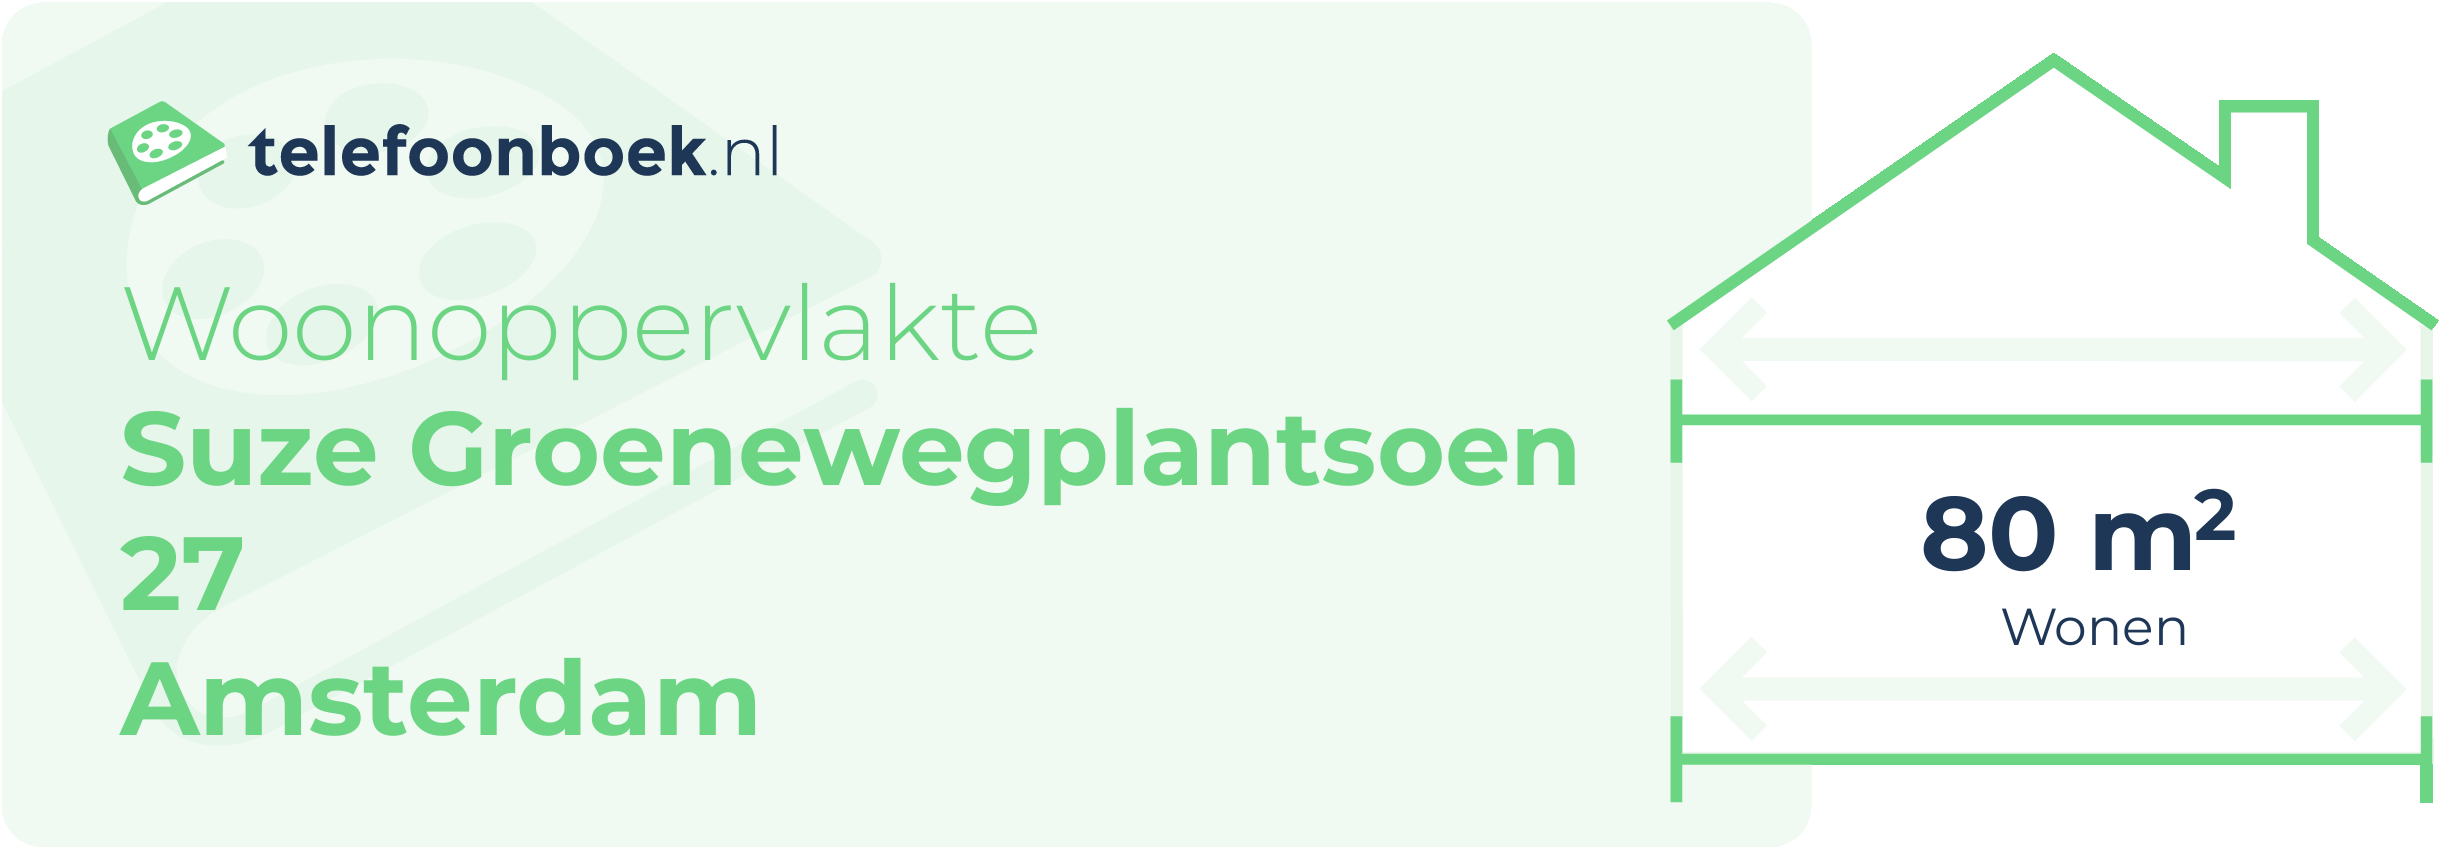 Woonoppervlakte Suze Groenewegplantsoen 27 Amsterdam